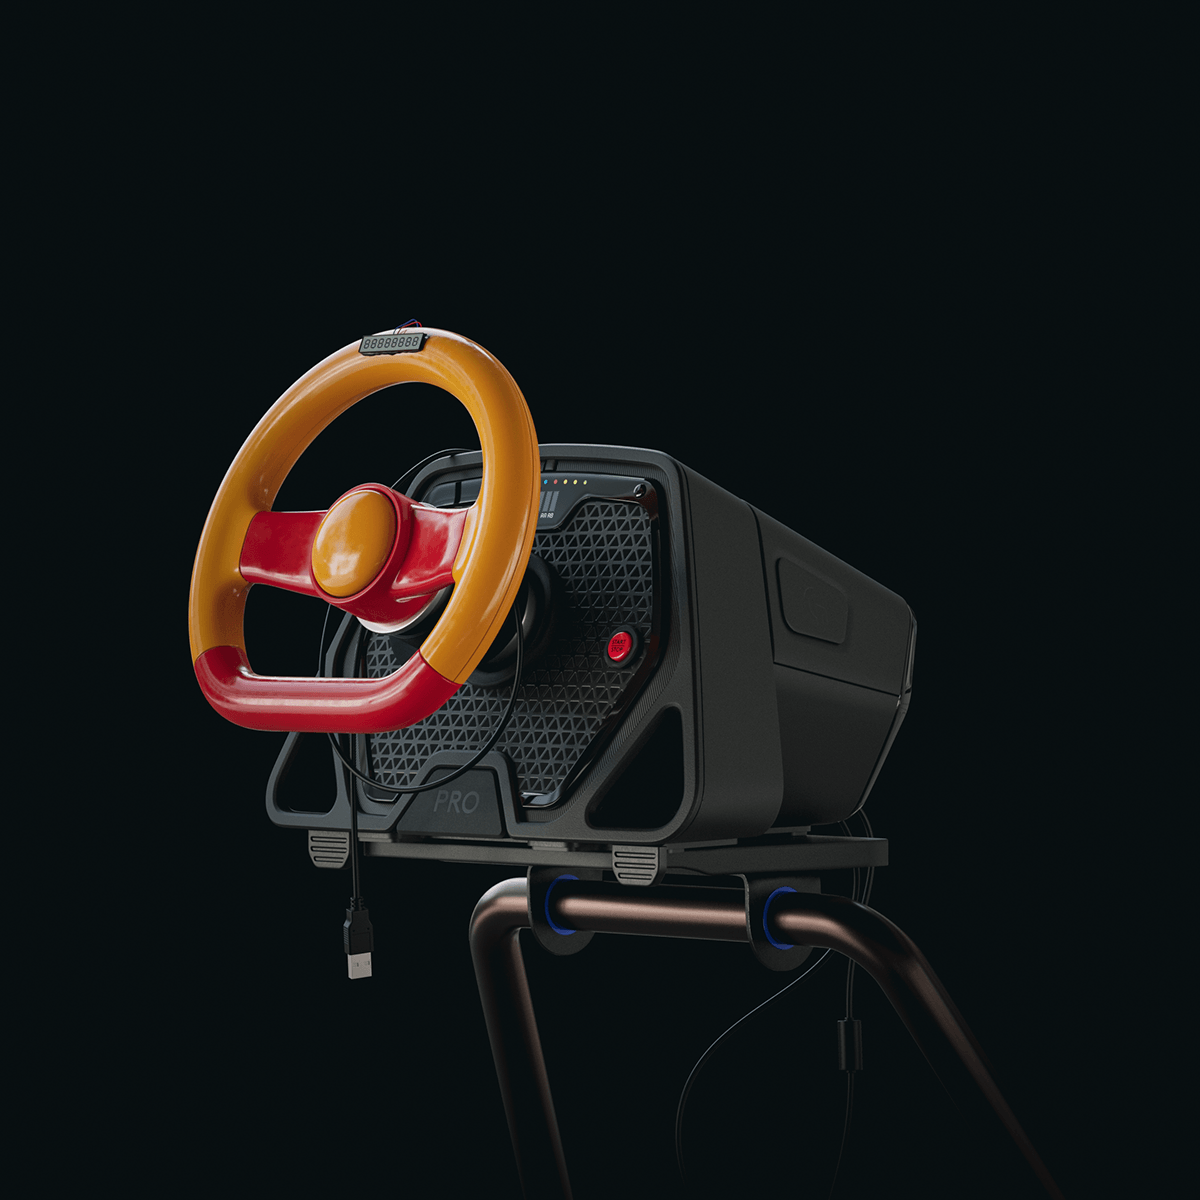 CGI sim racing blender automotive   rendering 3D Parody Logitech steering wheel toy